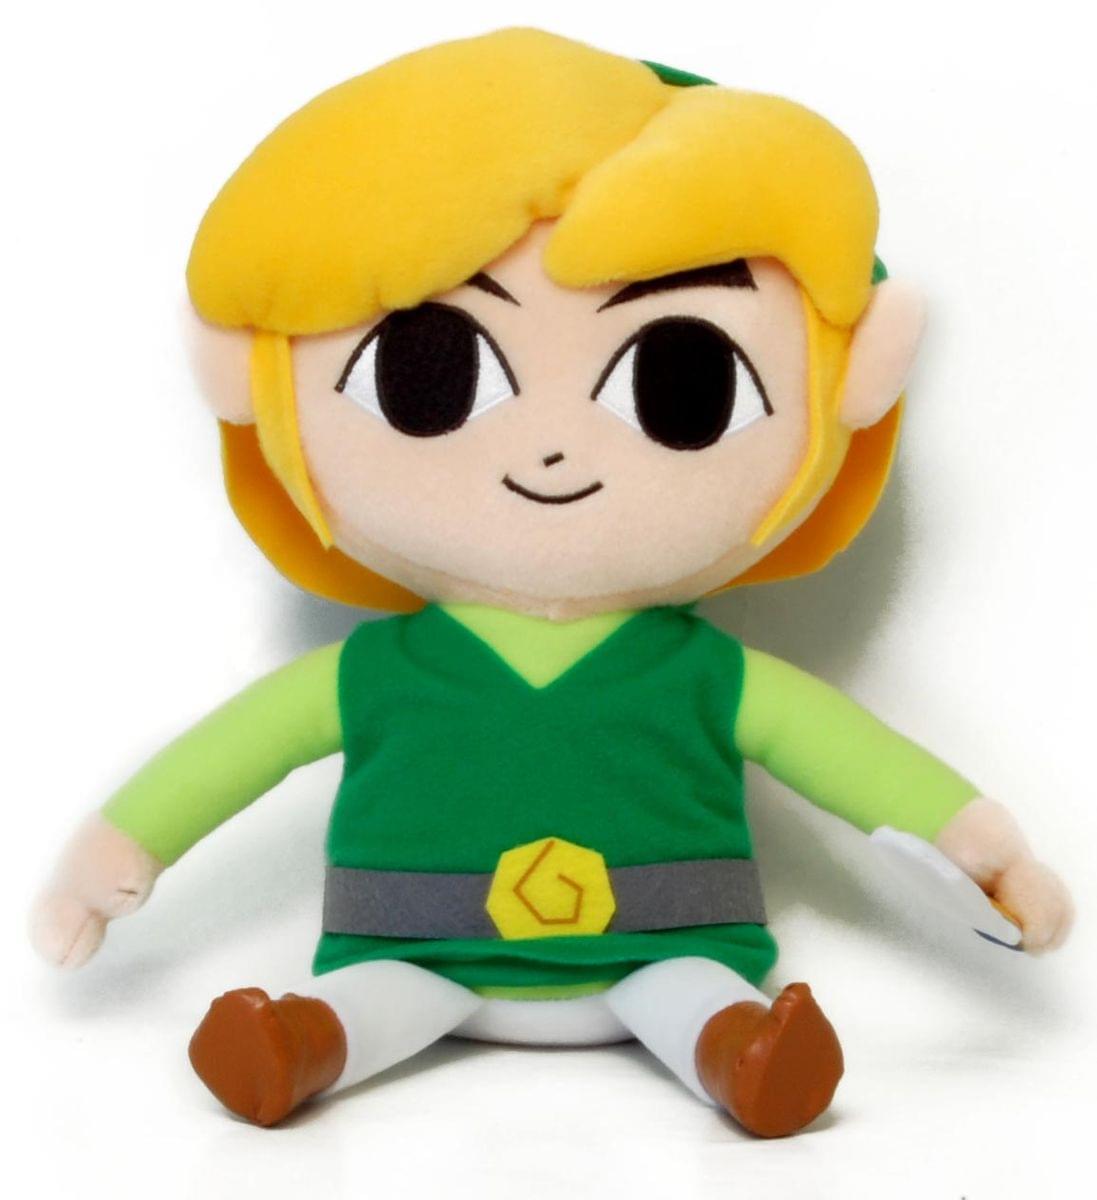 Legend Of Zelda Link 12" Plush Doll